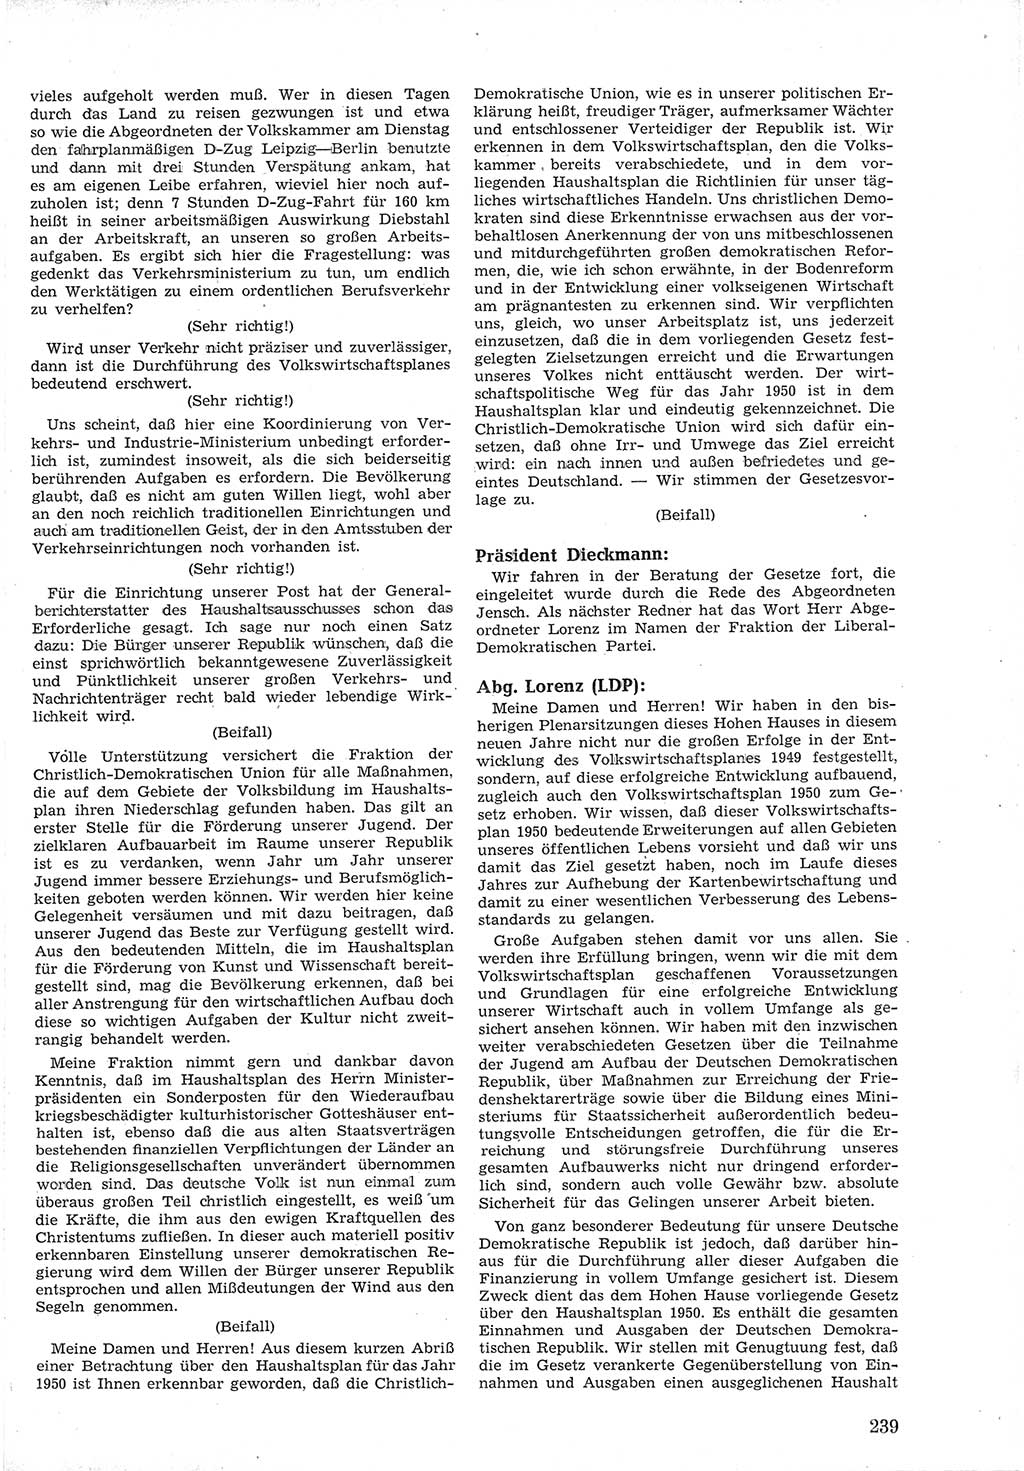 Provisorische Volkskammer (VK) der Deutschen Demokratischen Republik (DDR) 1949-1950, Dokument 253 (Prov. VK DDR 1949-1950, Dok. 253)